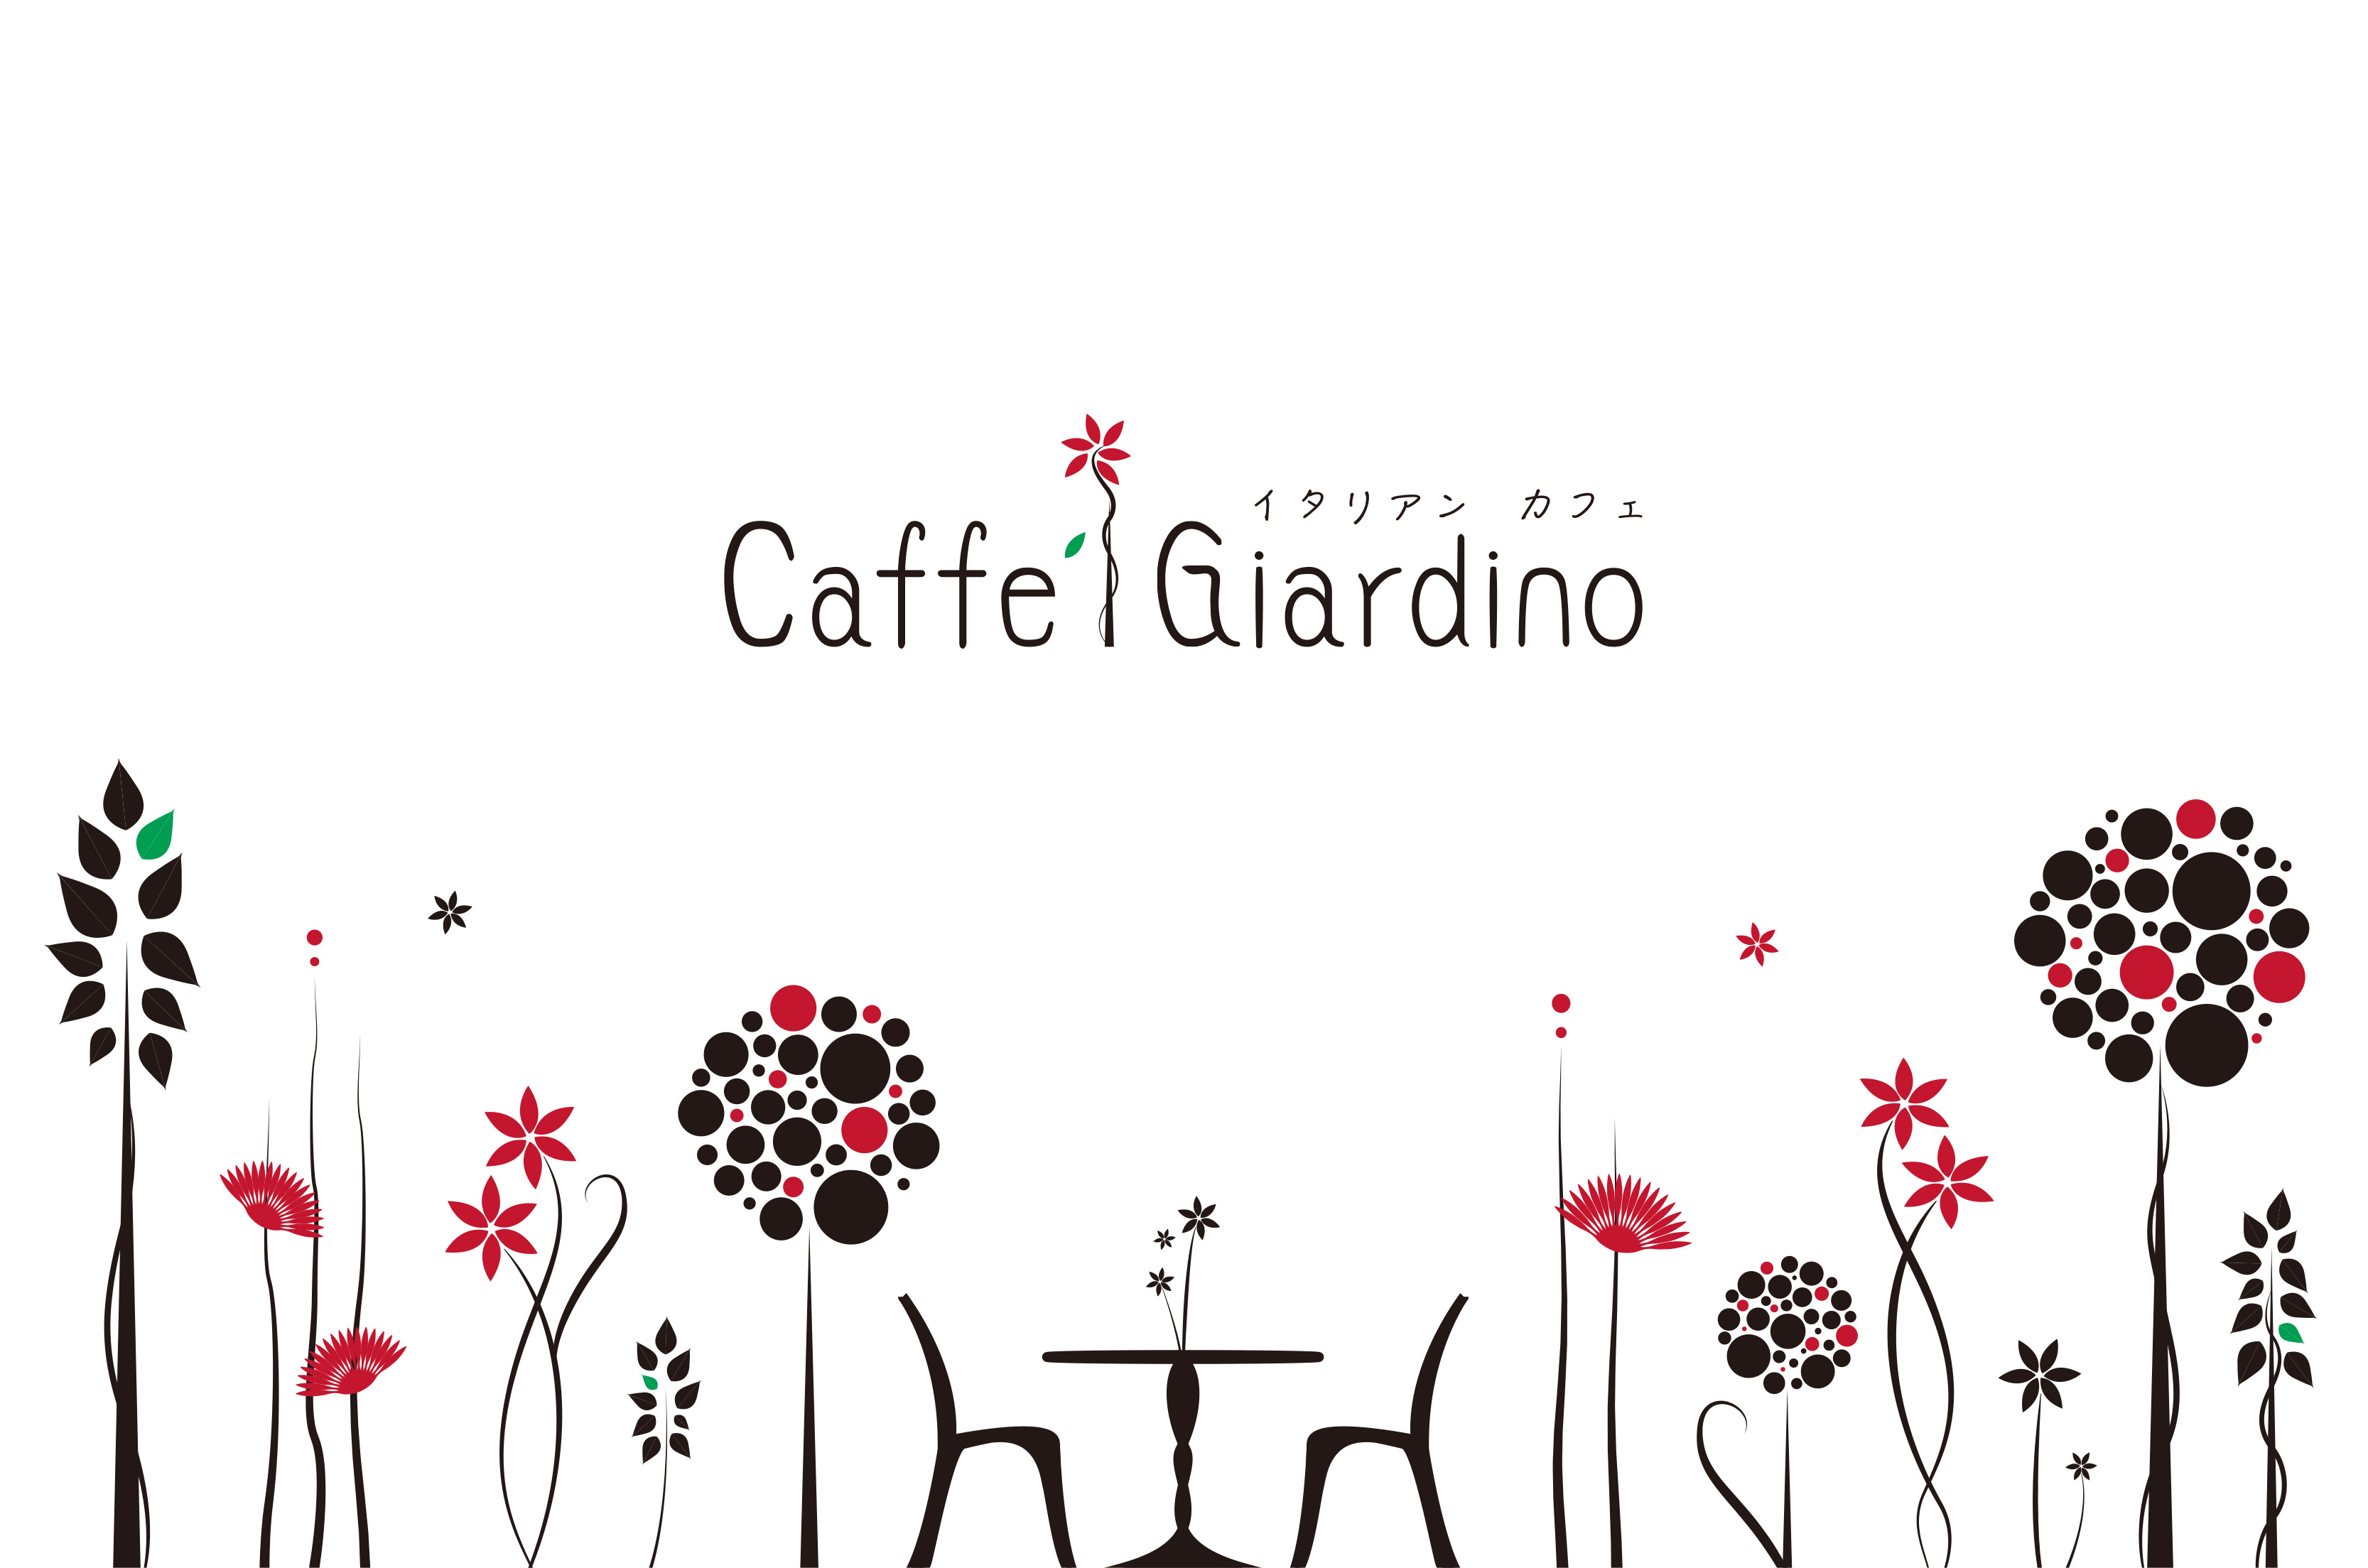 C^AEJtF-Caffe Giardino